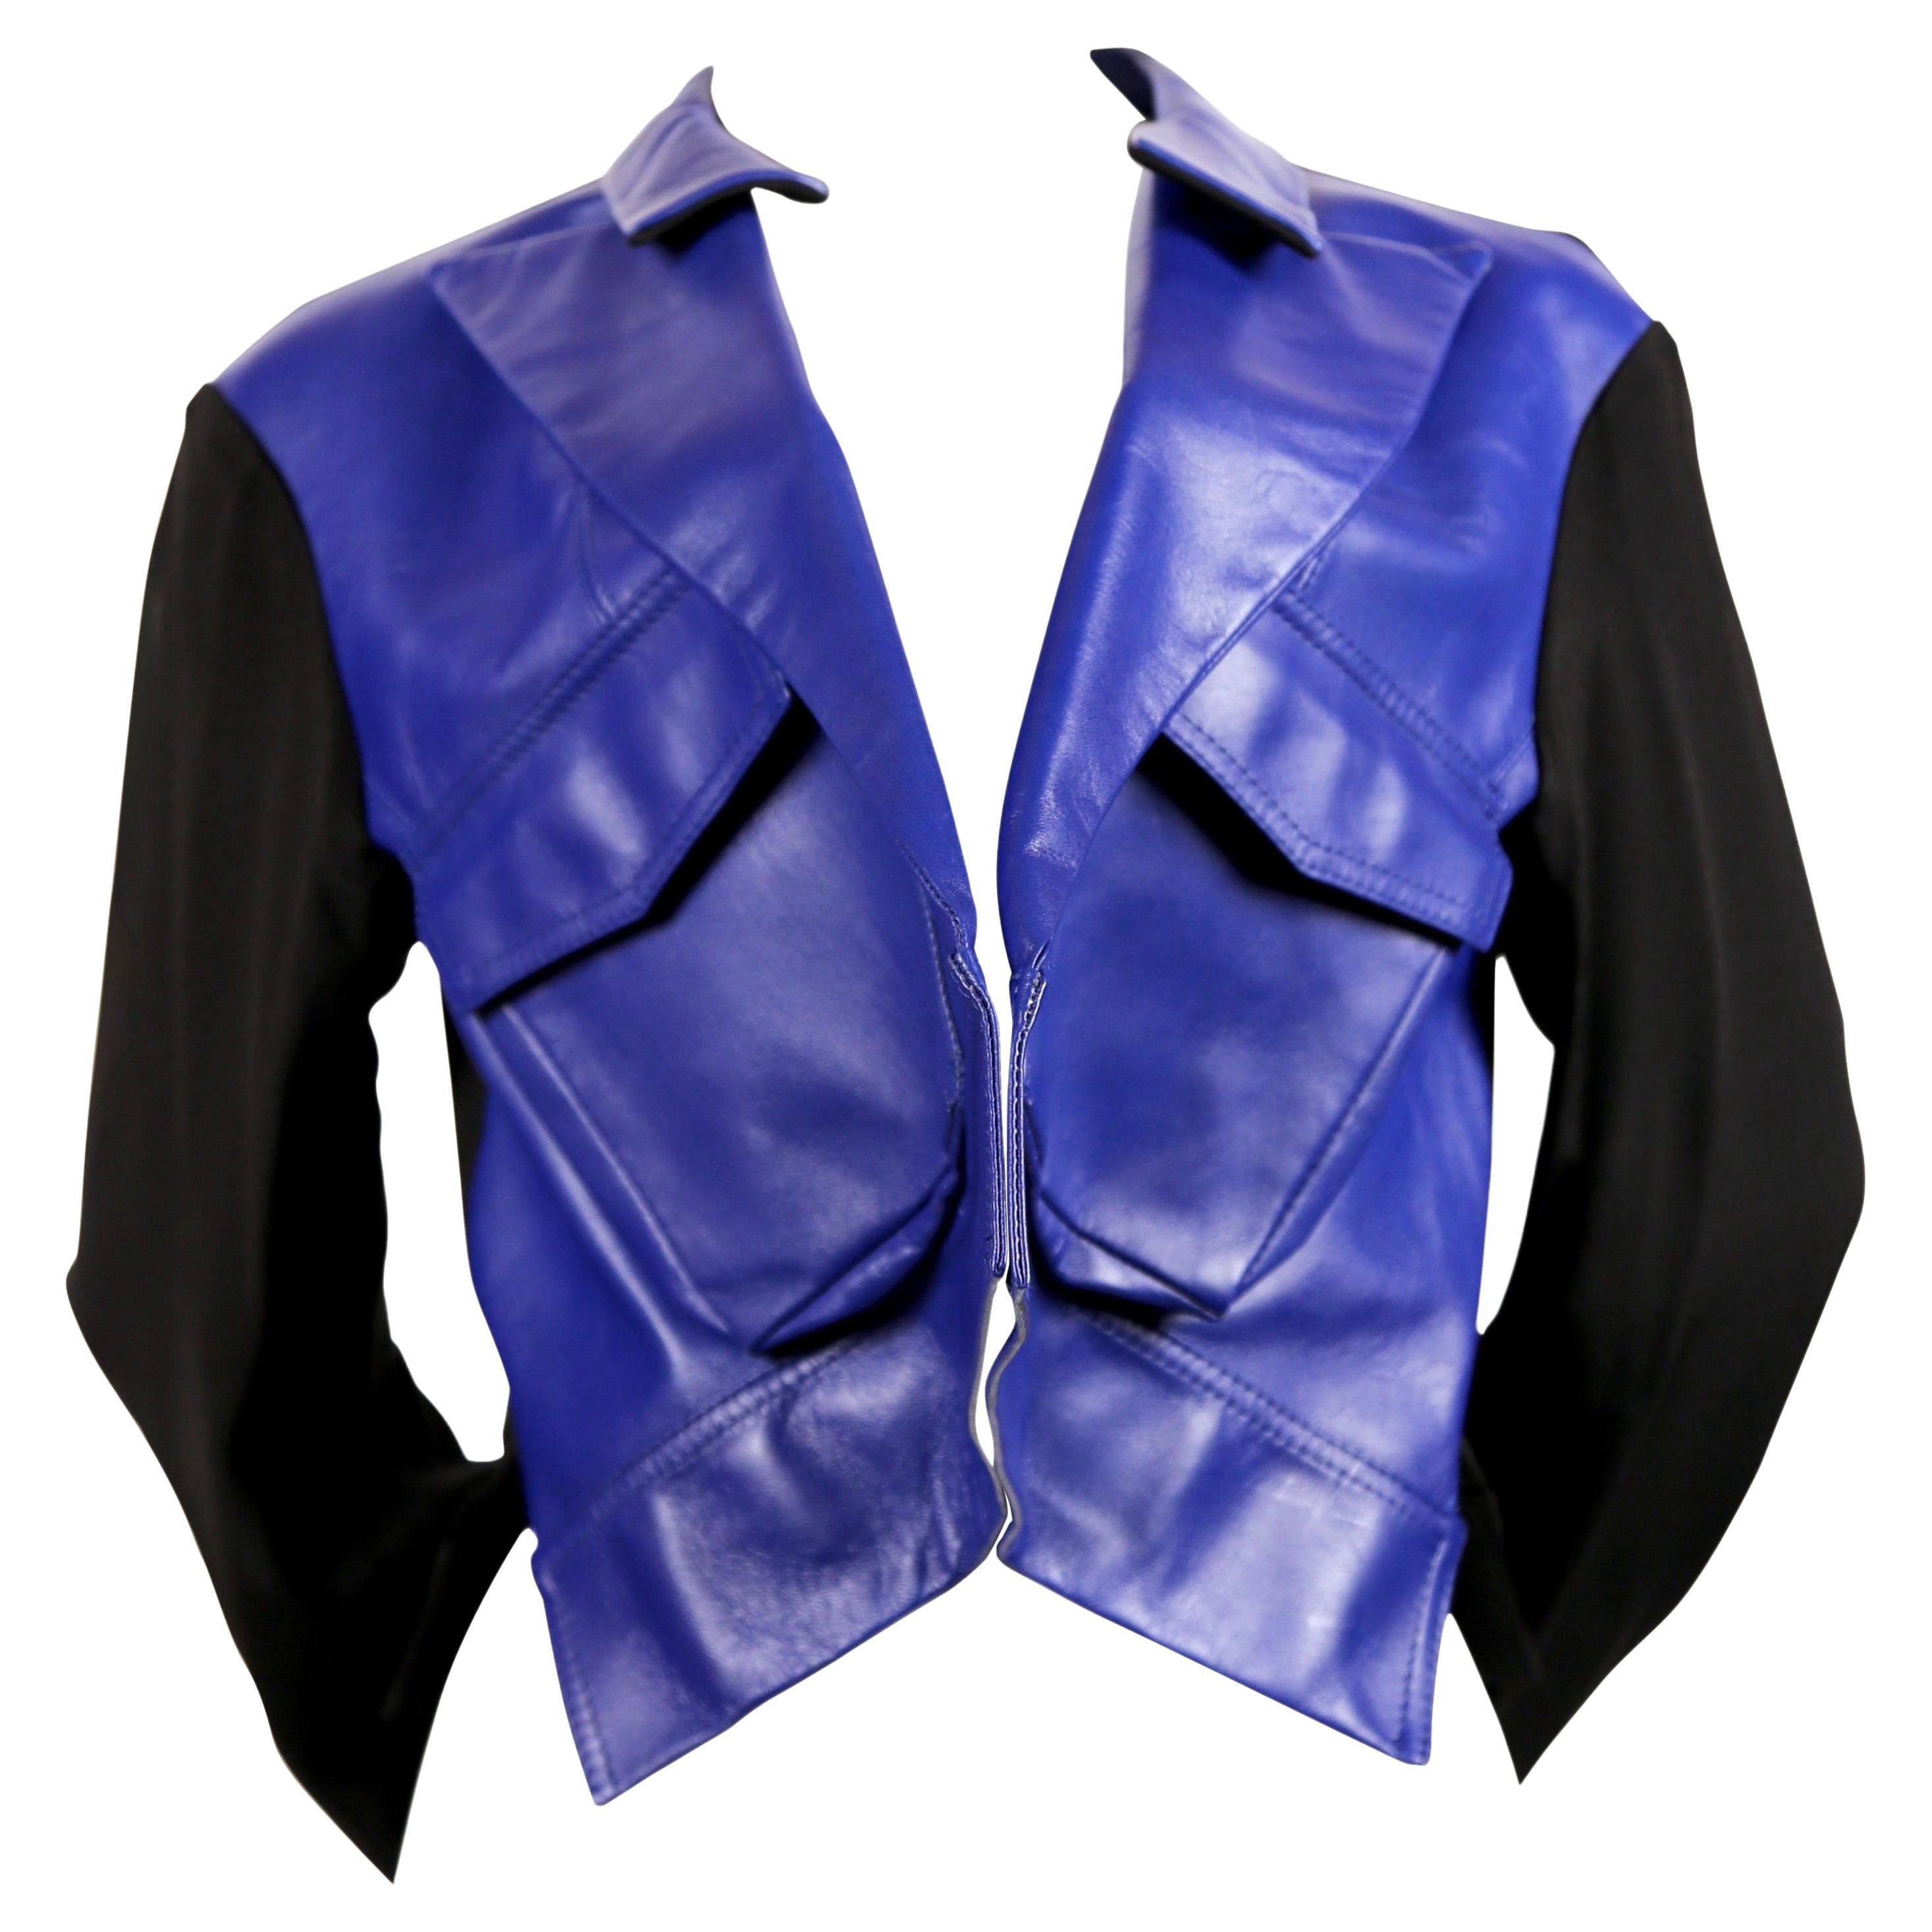 Yohji Yamamoto Leather Jacket - 4 For Sale on 1stDibs